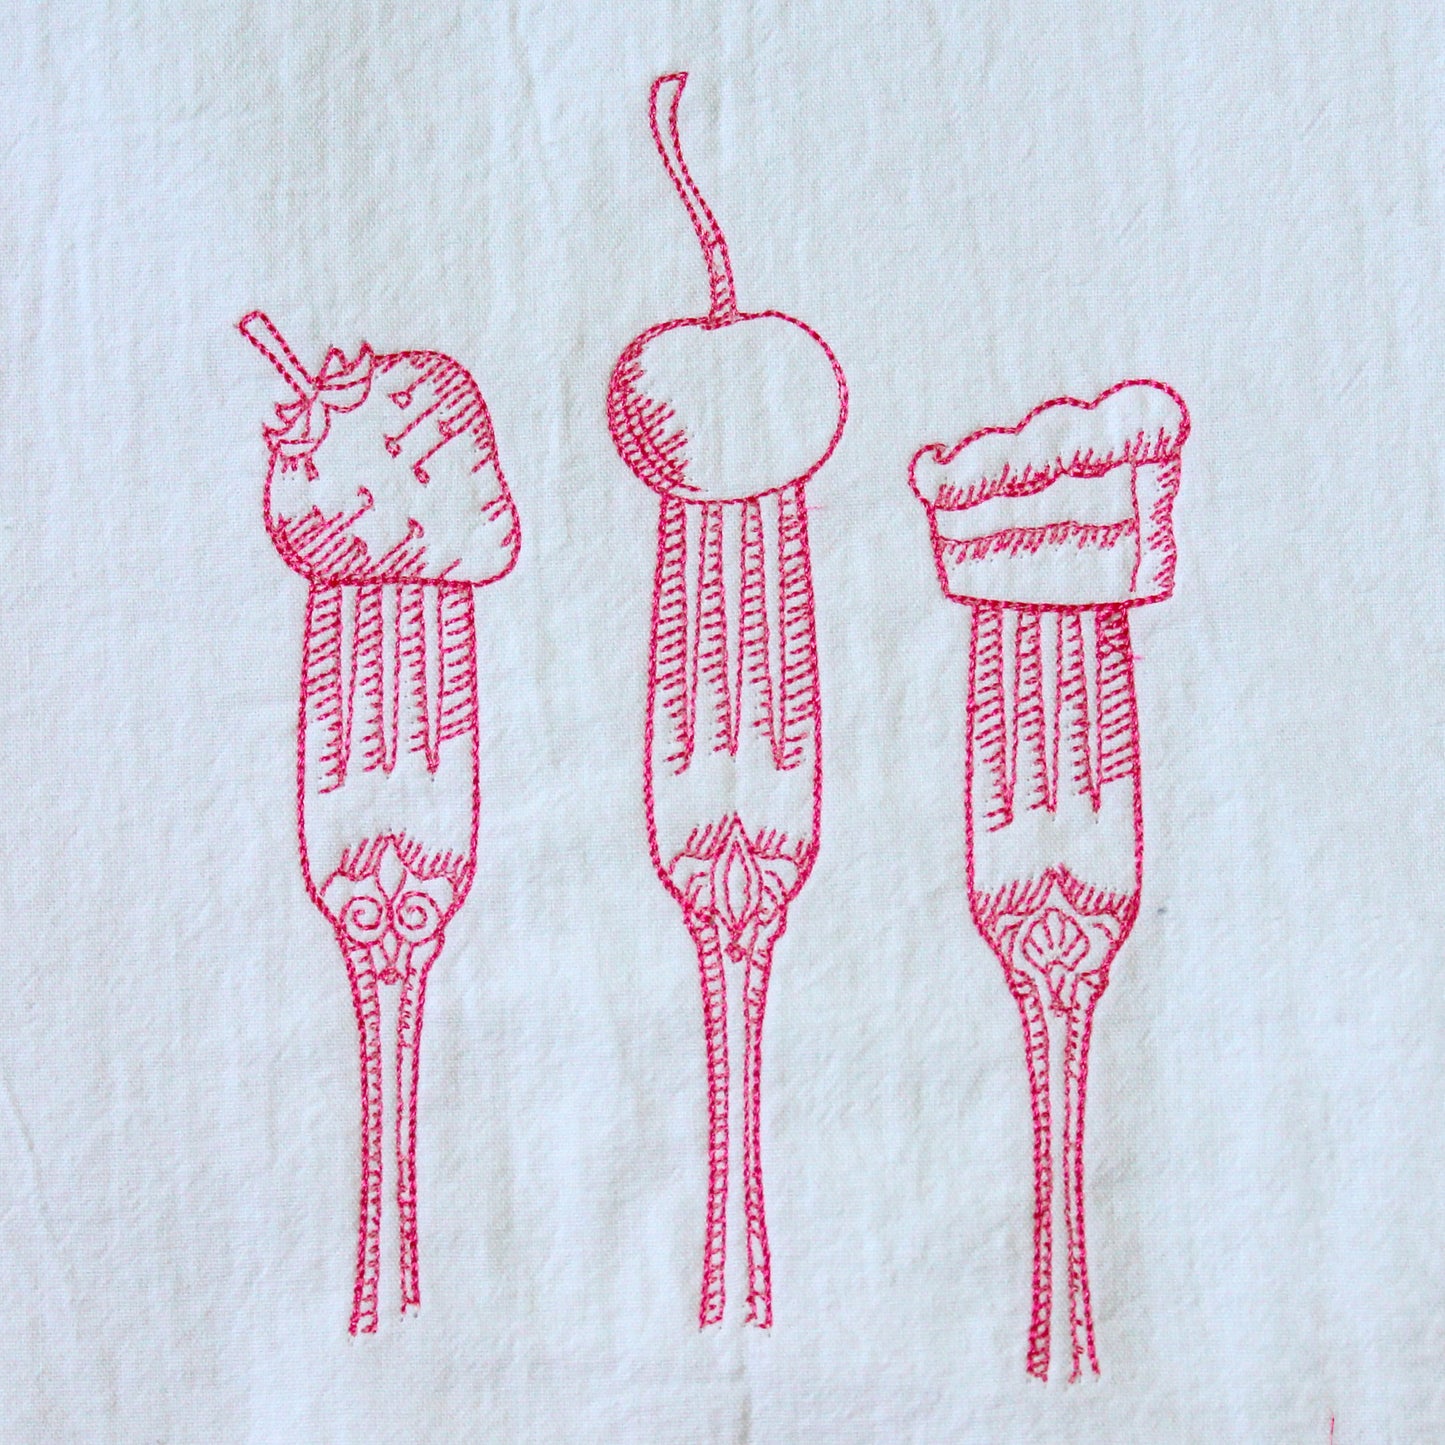 Forks with Dessert Towel